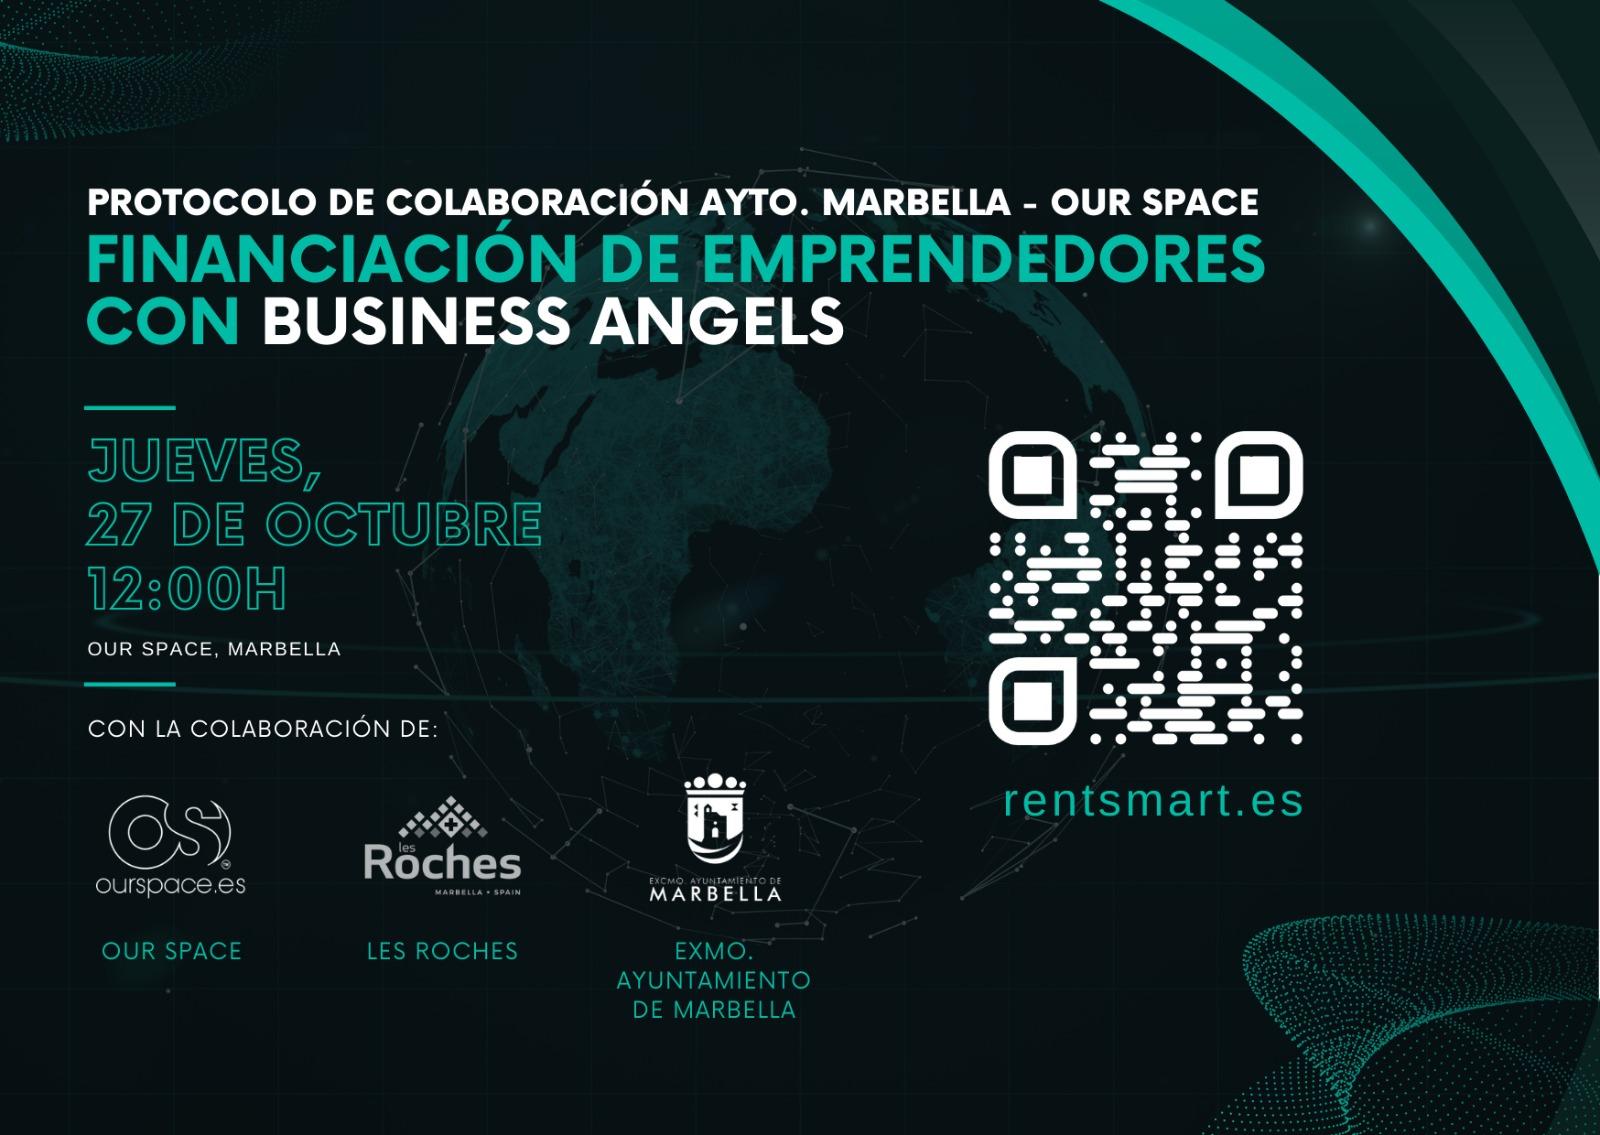 OUR SPACE/ FINANCIACIÓN DE EMPRENDEDORES CON BUSINESS ANGELS